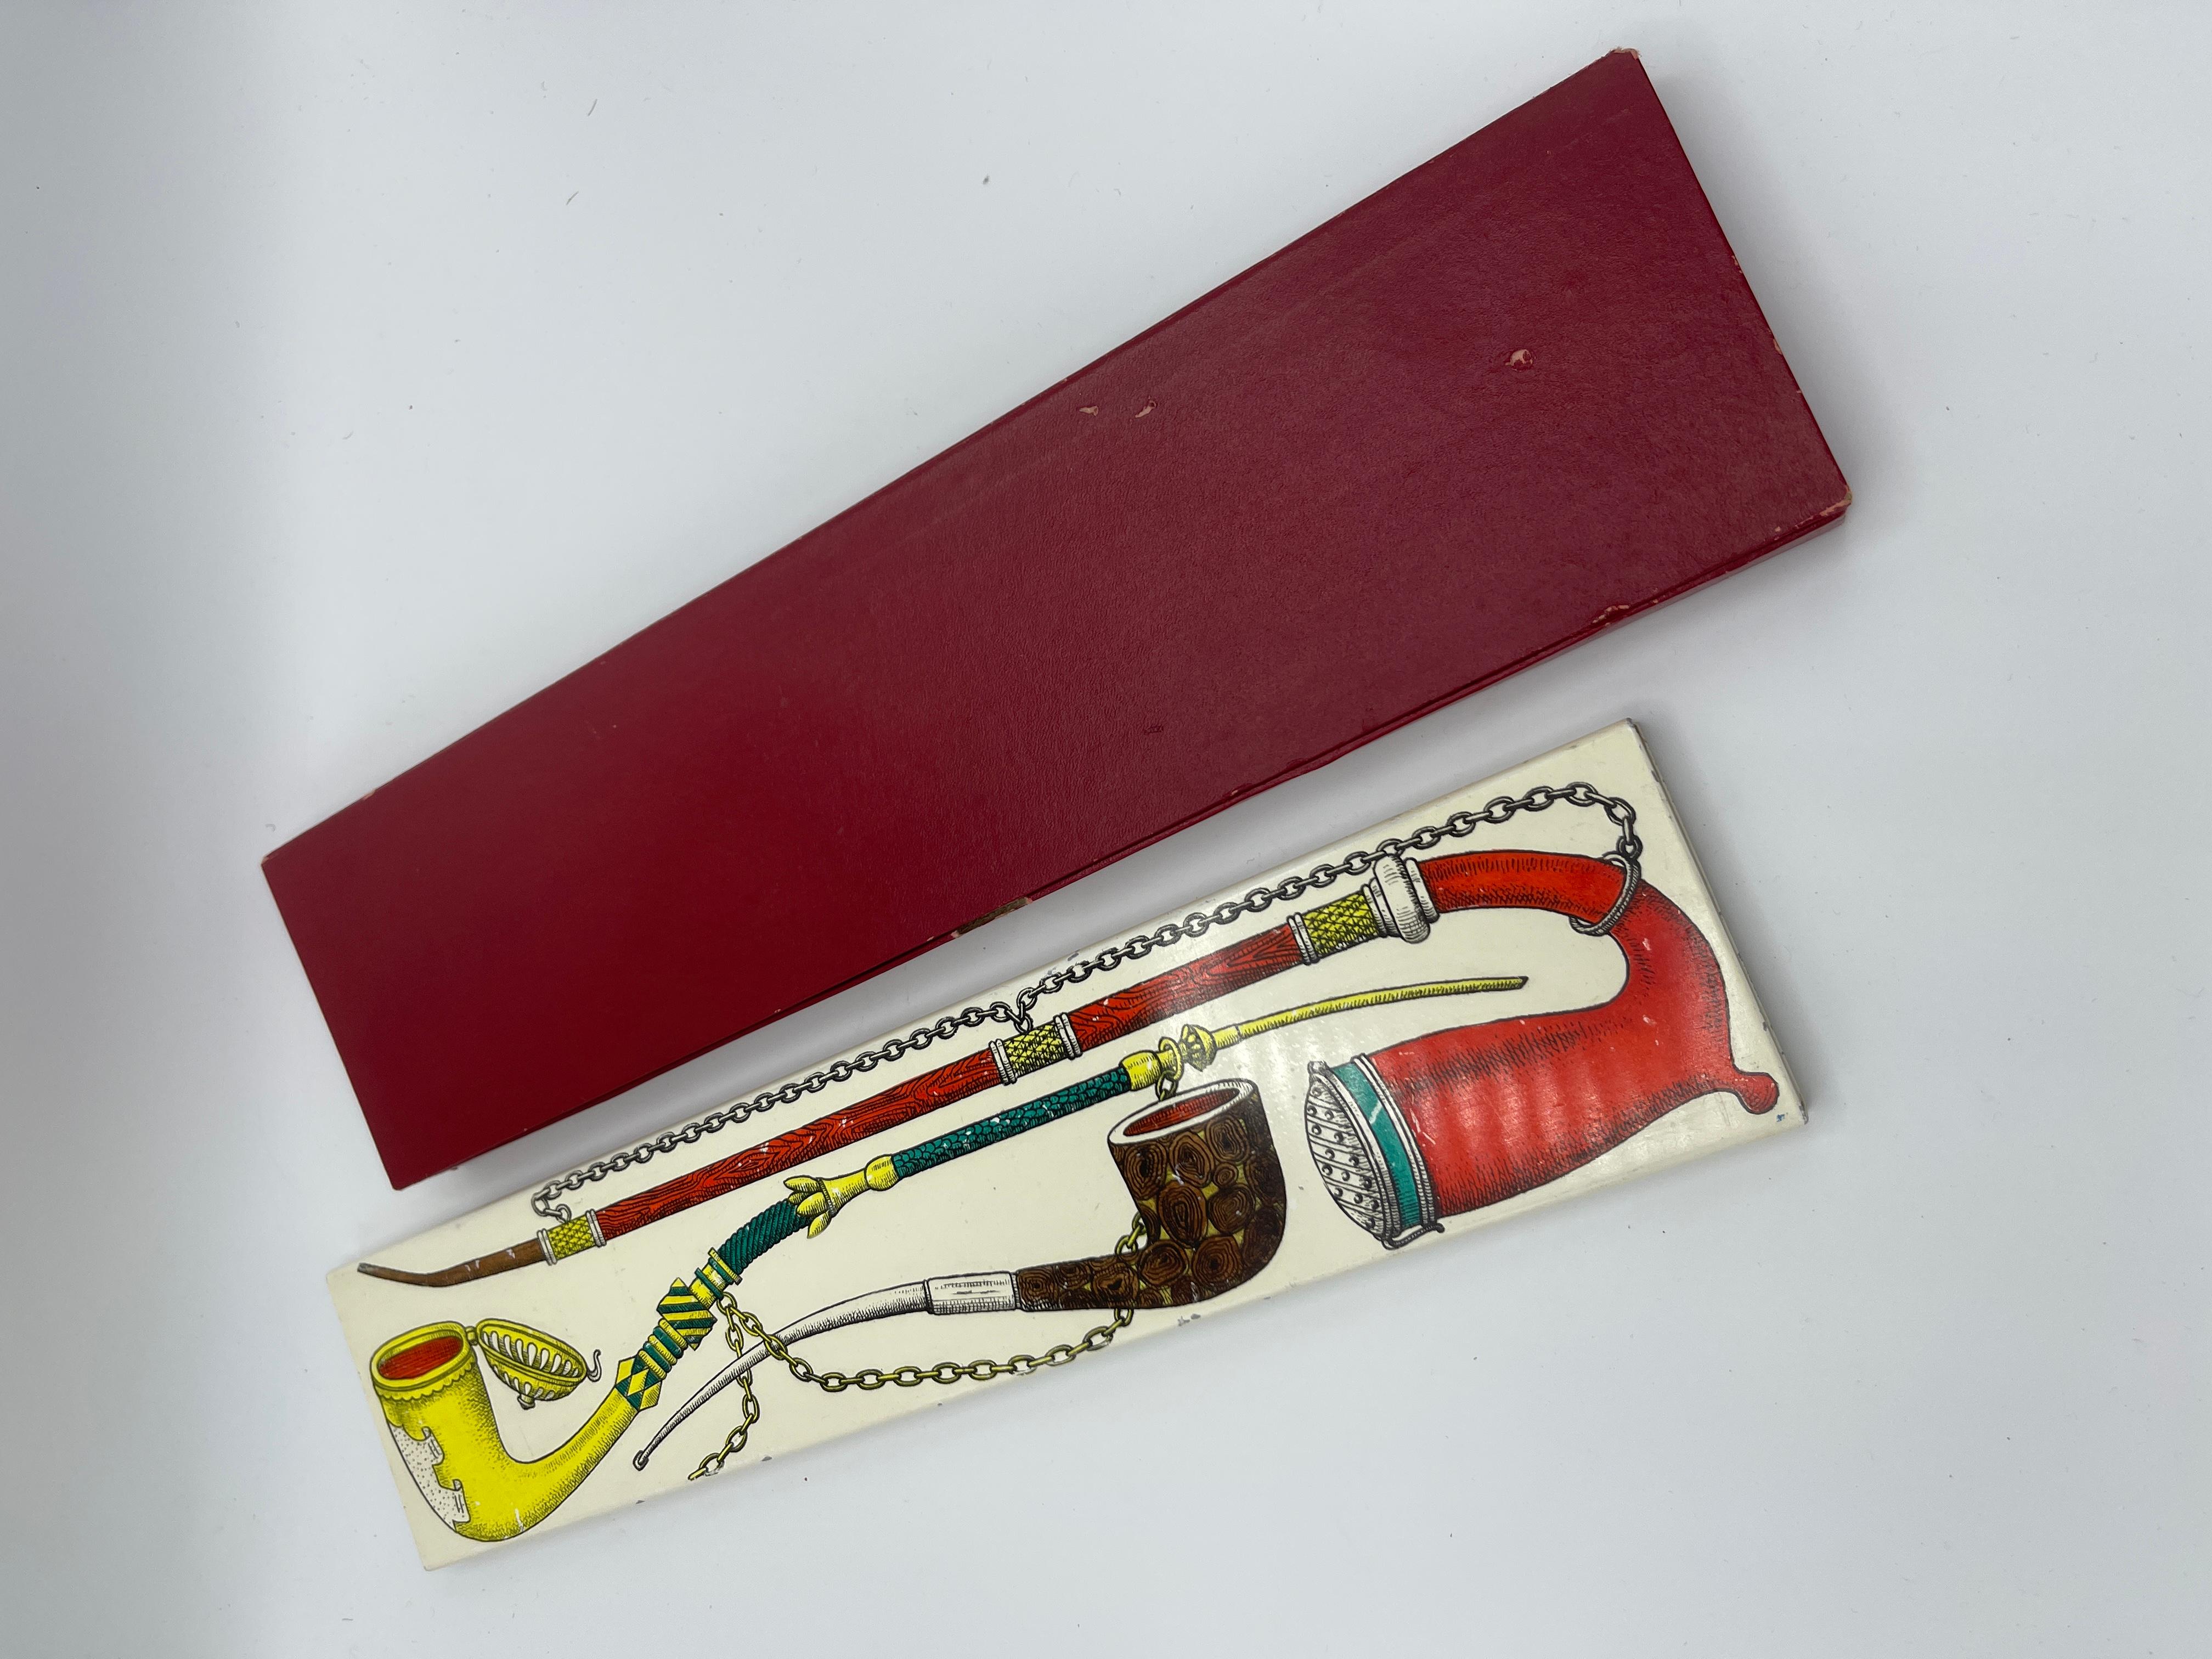 Seltene und originelle Metall-Boxe von Piero Fornasetti aus den 50er Jahren, verziert mit Pfeifen,  mit der Originalverpackung. in sehr gutem und originalem Zustand, verwendet für Streichhölzer, Zigaretten, Schmuck und mehr.